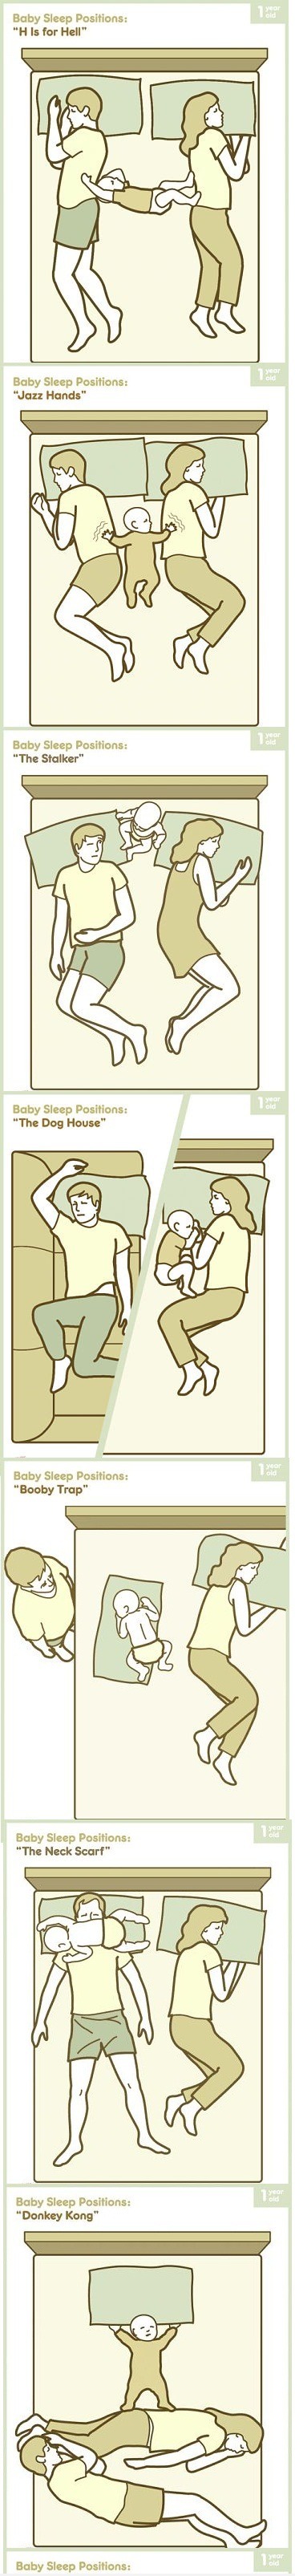 Baby Sleep Positions